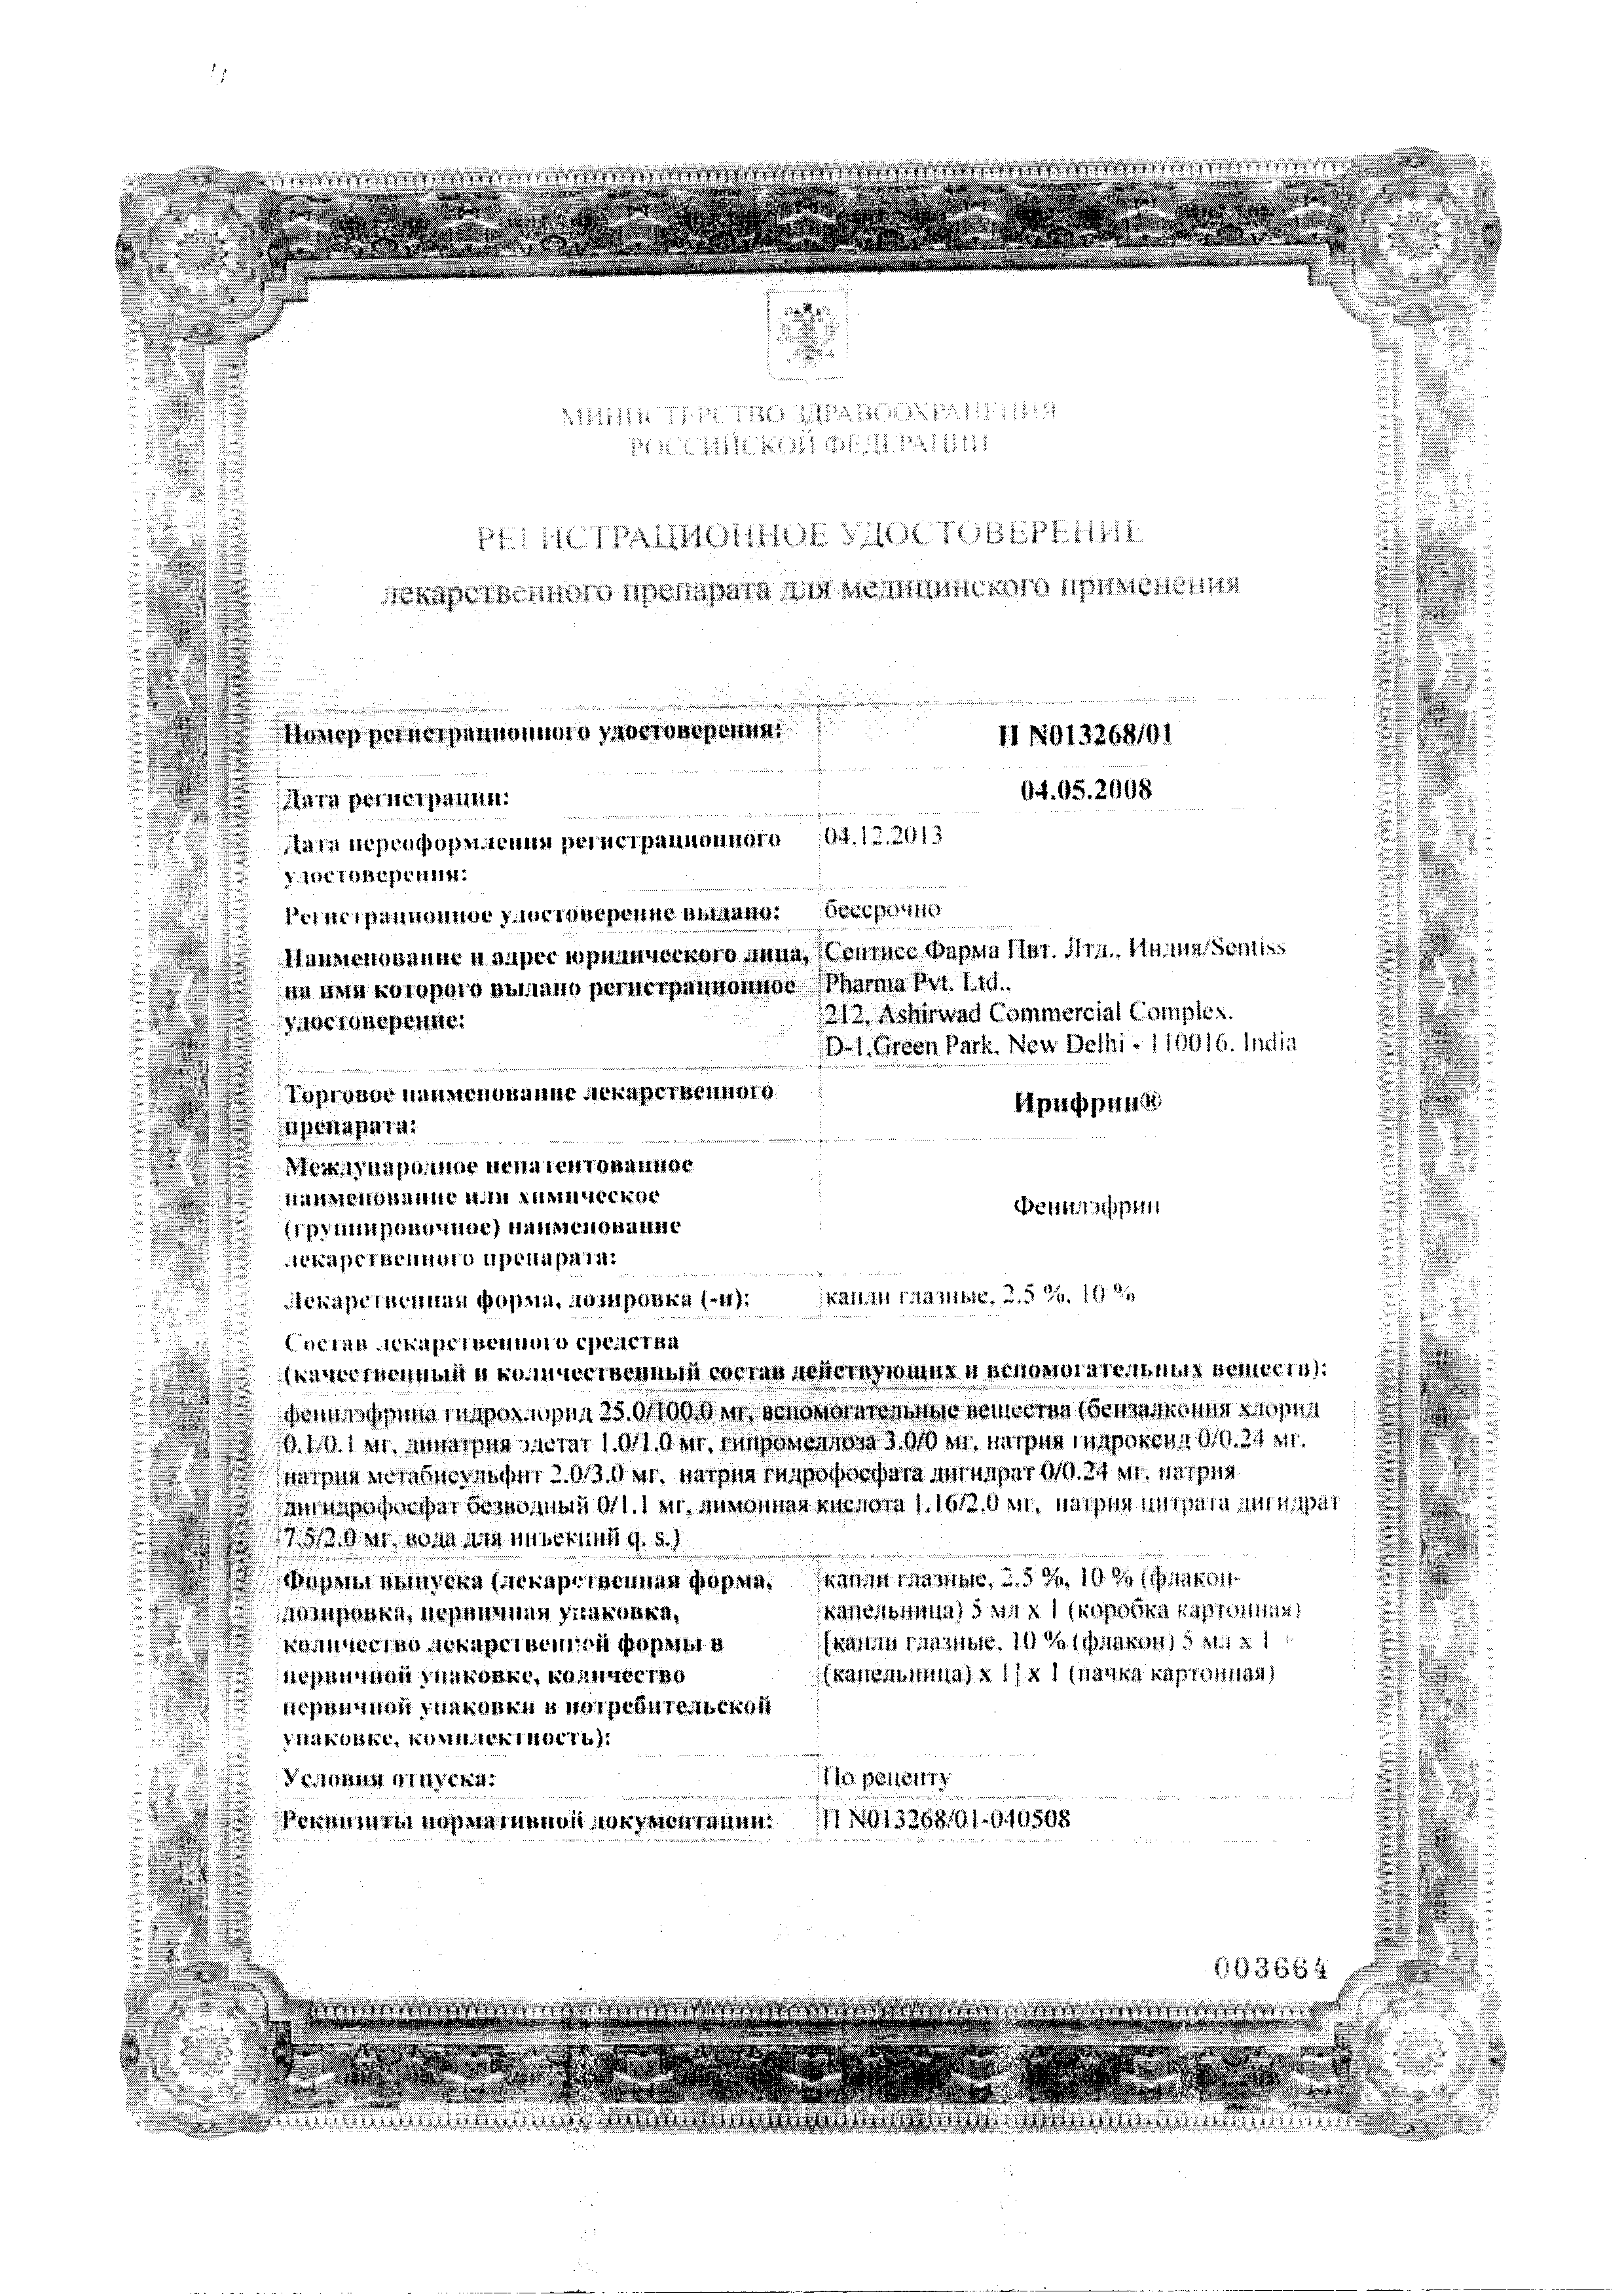 Ирифрин сертификат